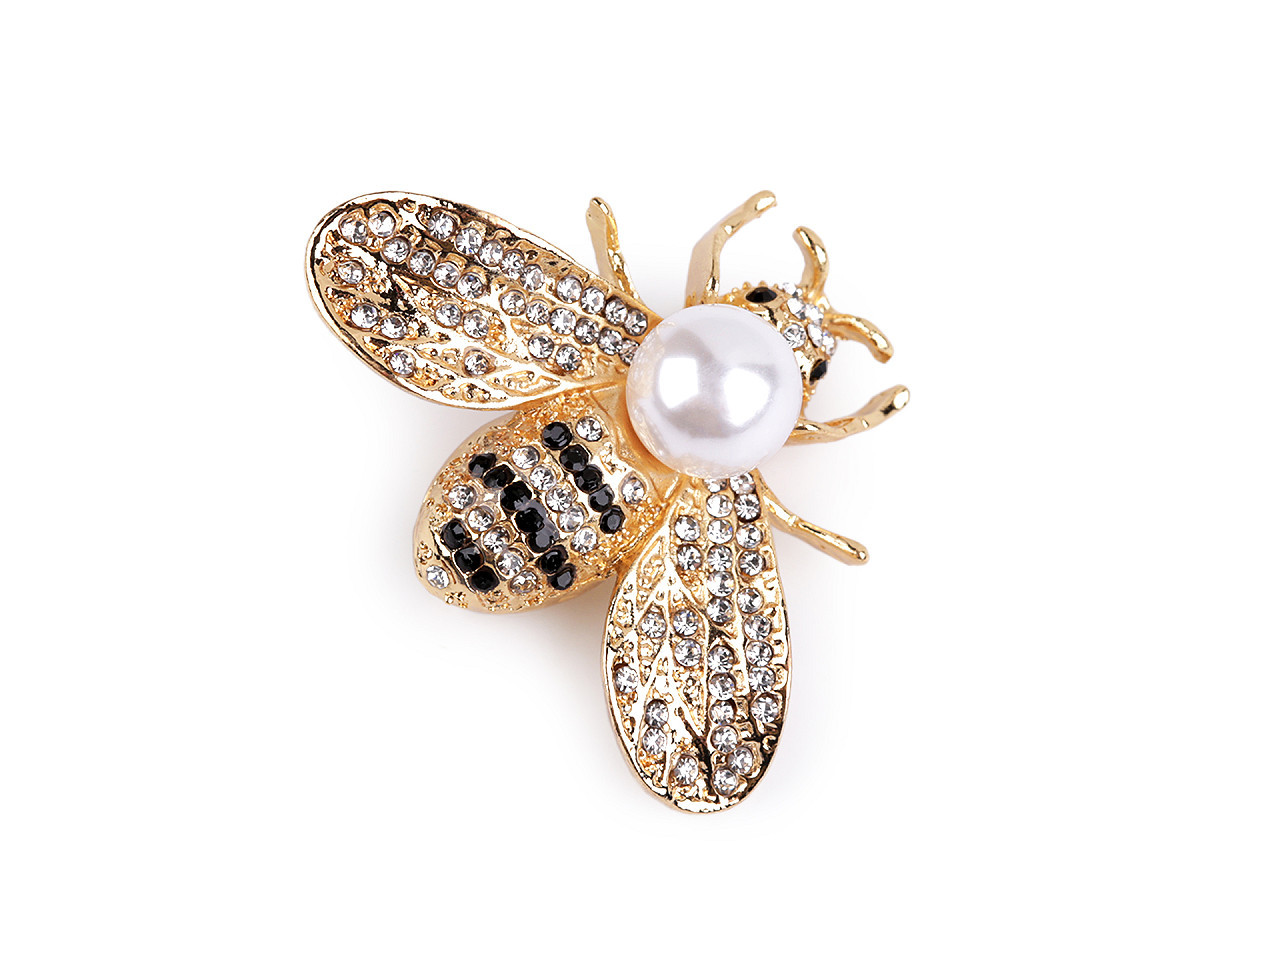 Brož s broušenými kamínky a perlou včela, barva 2 crystal zlatá